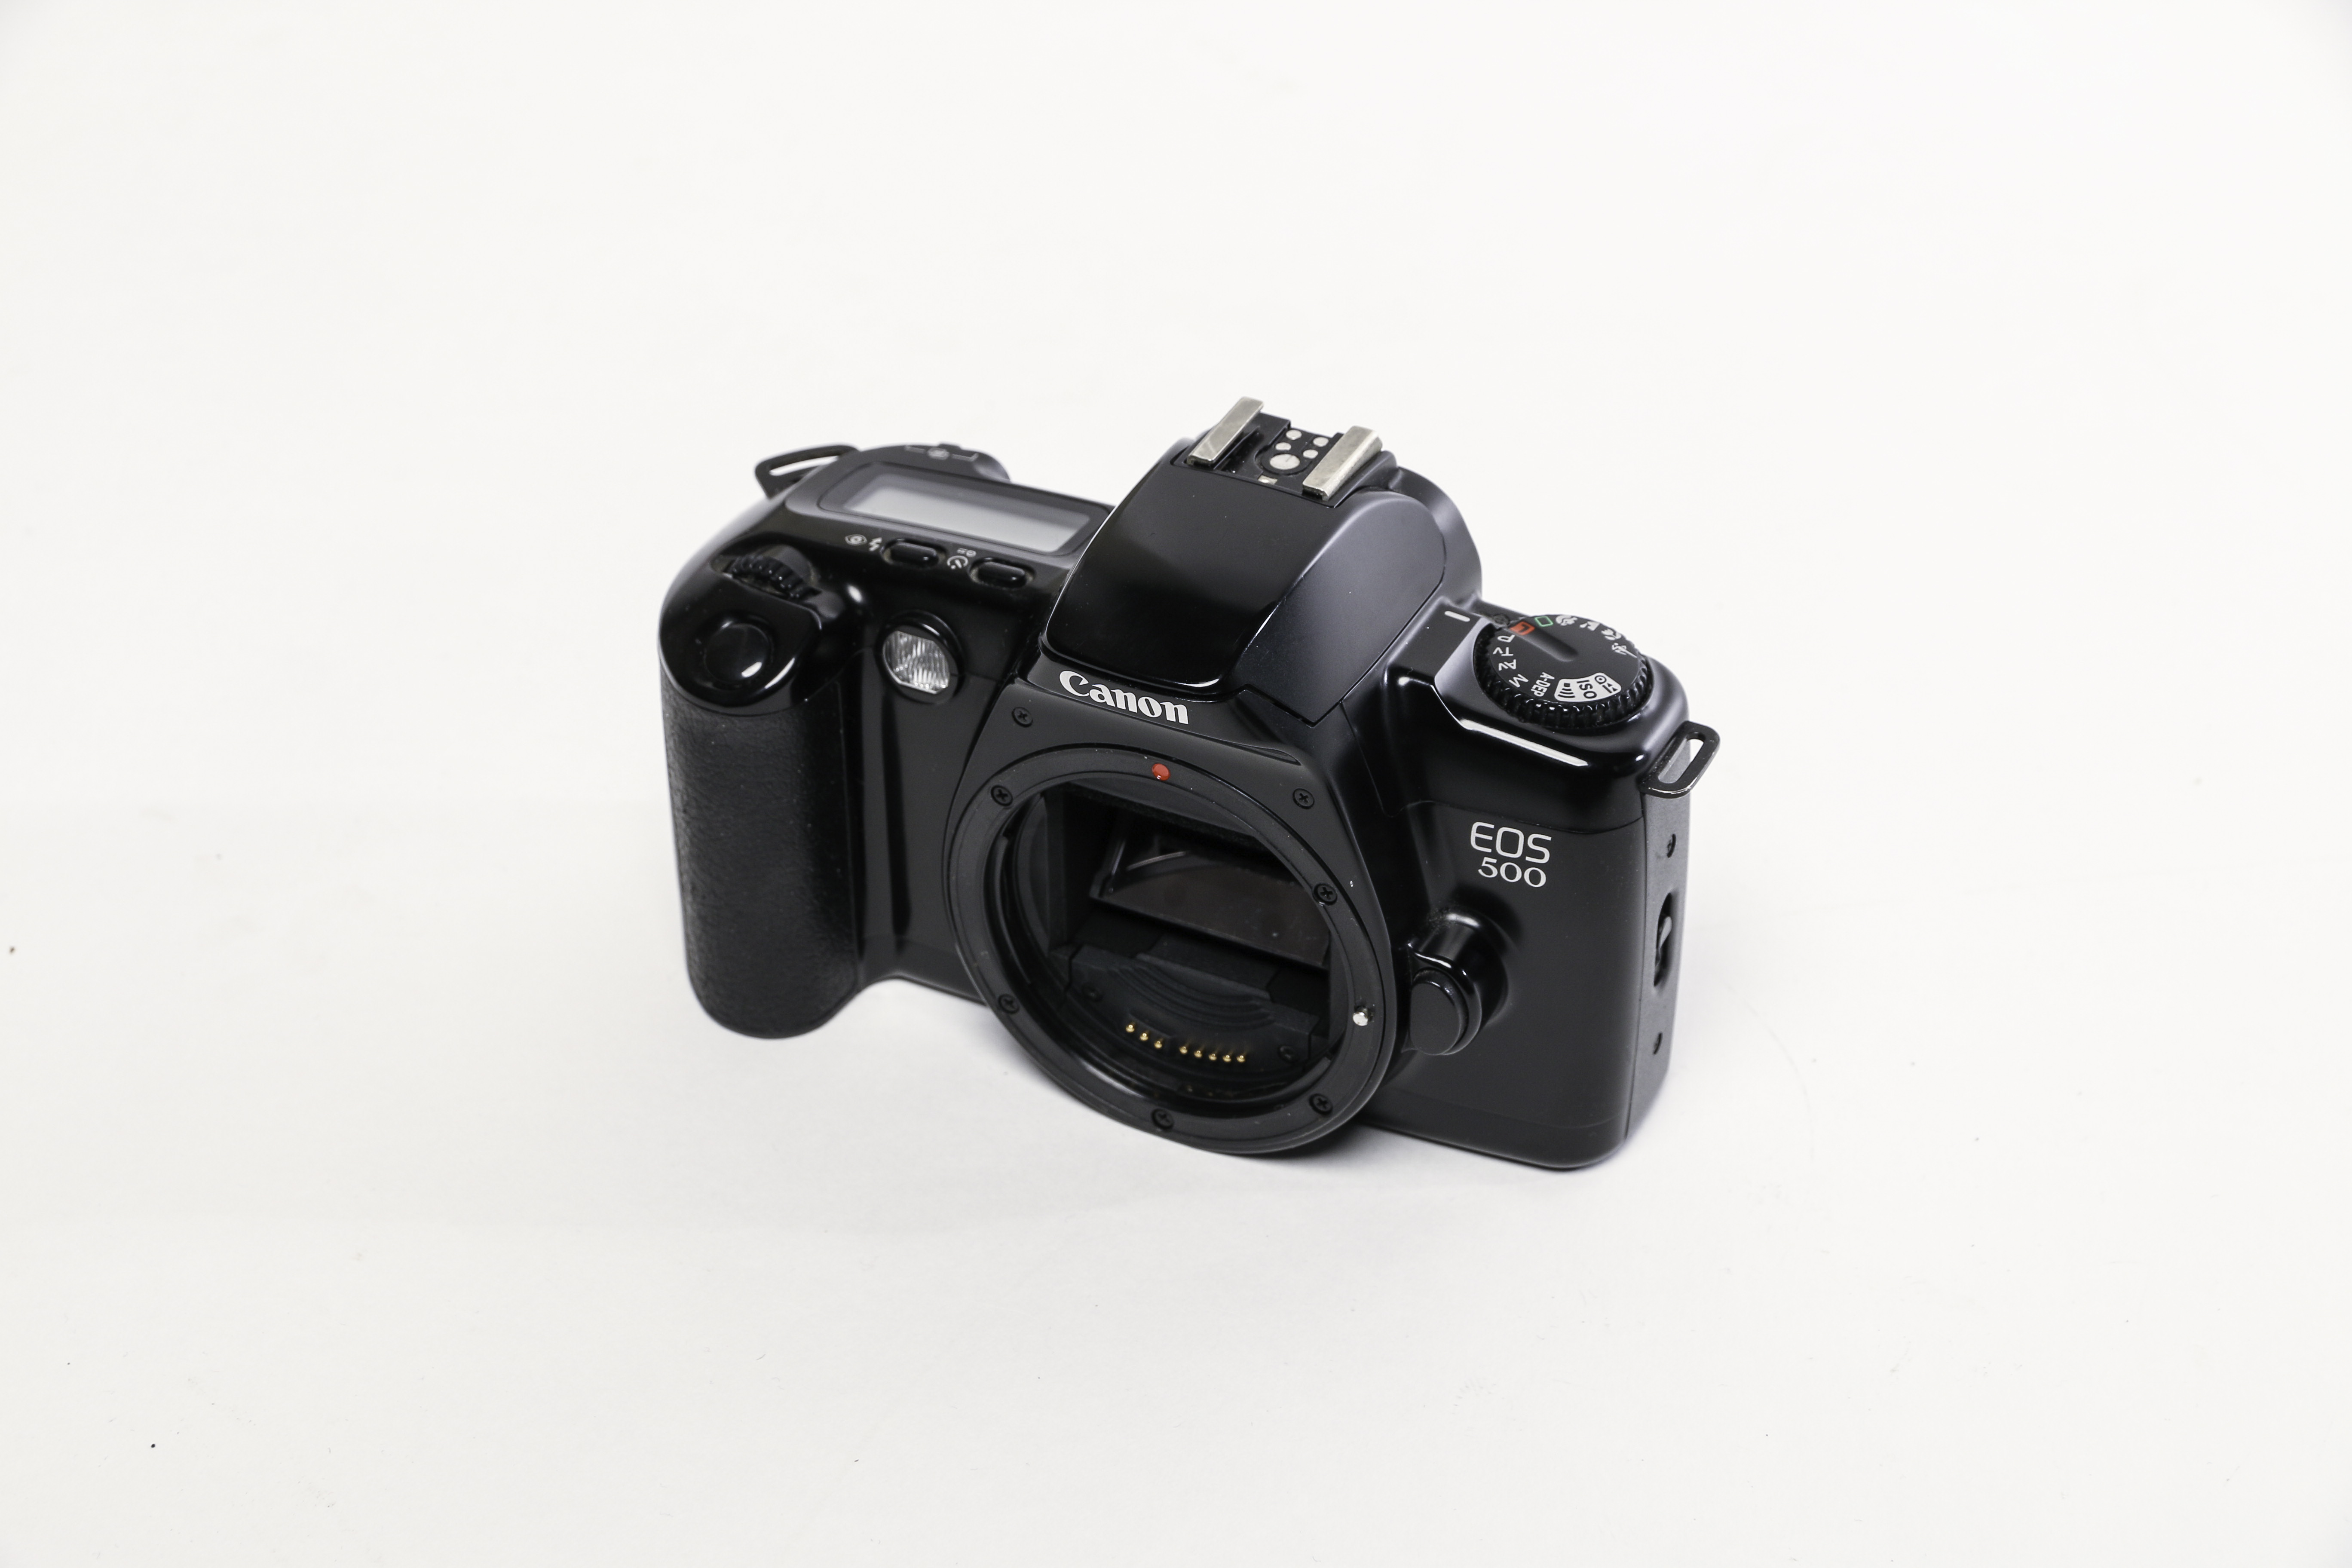 Canon EOS 500 Analog gebraucht Bild 01